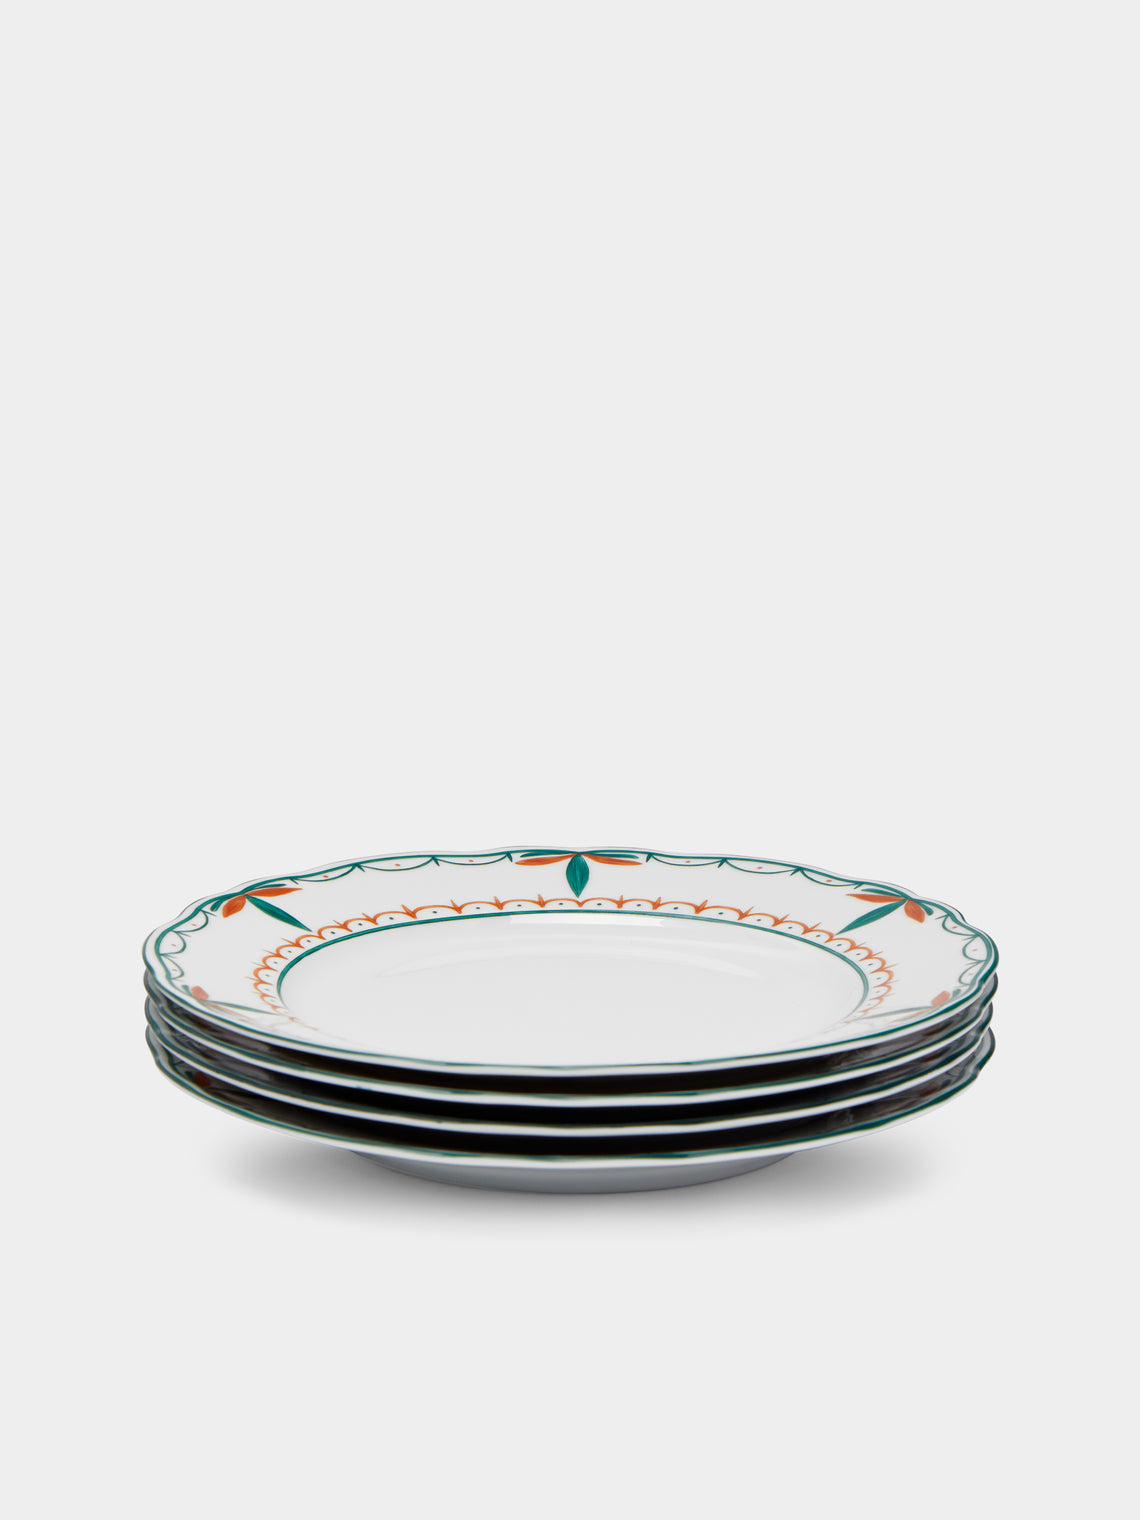 Molecot - Jardin Porcelain Dessert Plates (Set of 4) -  - ABASK